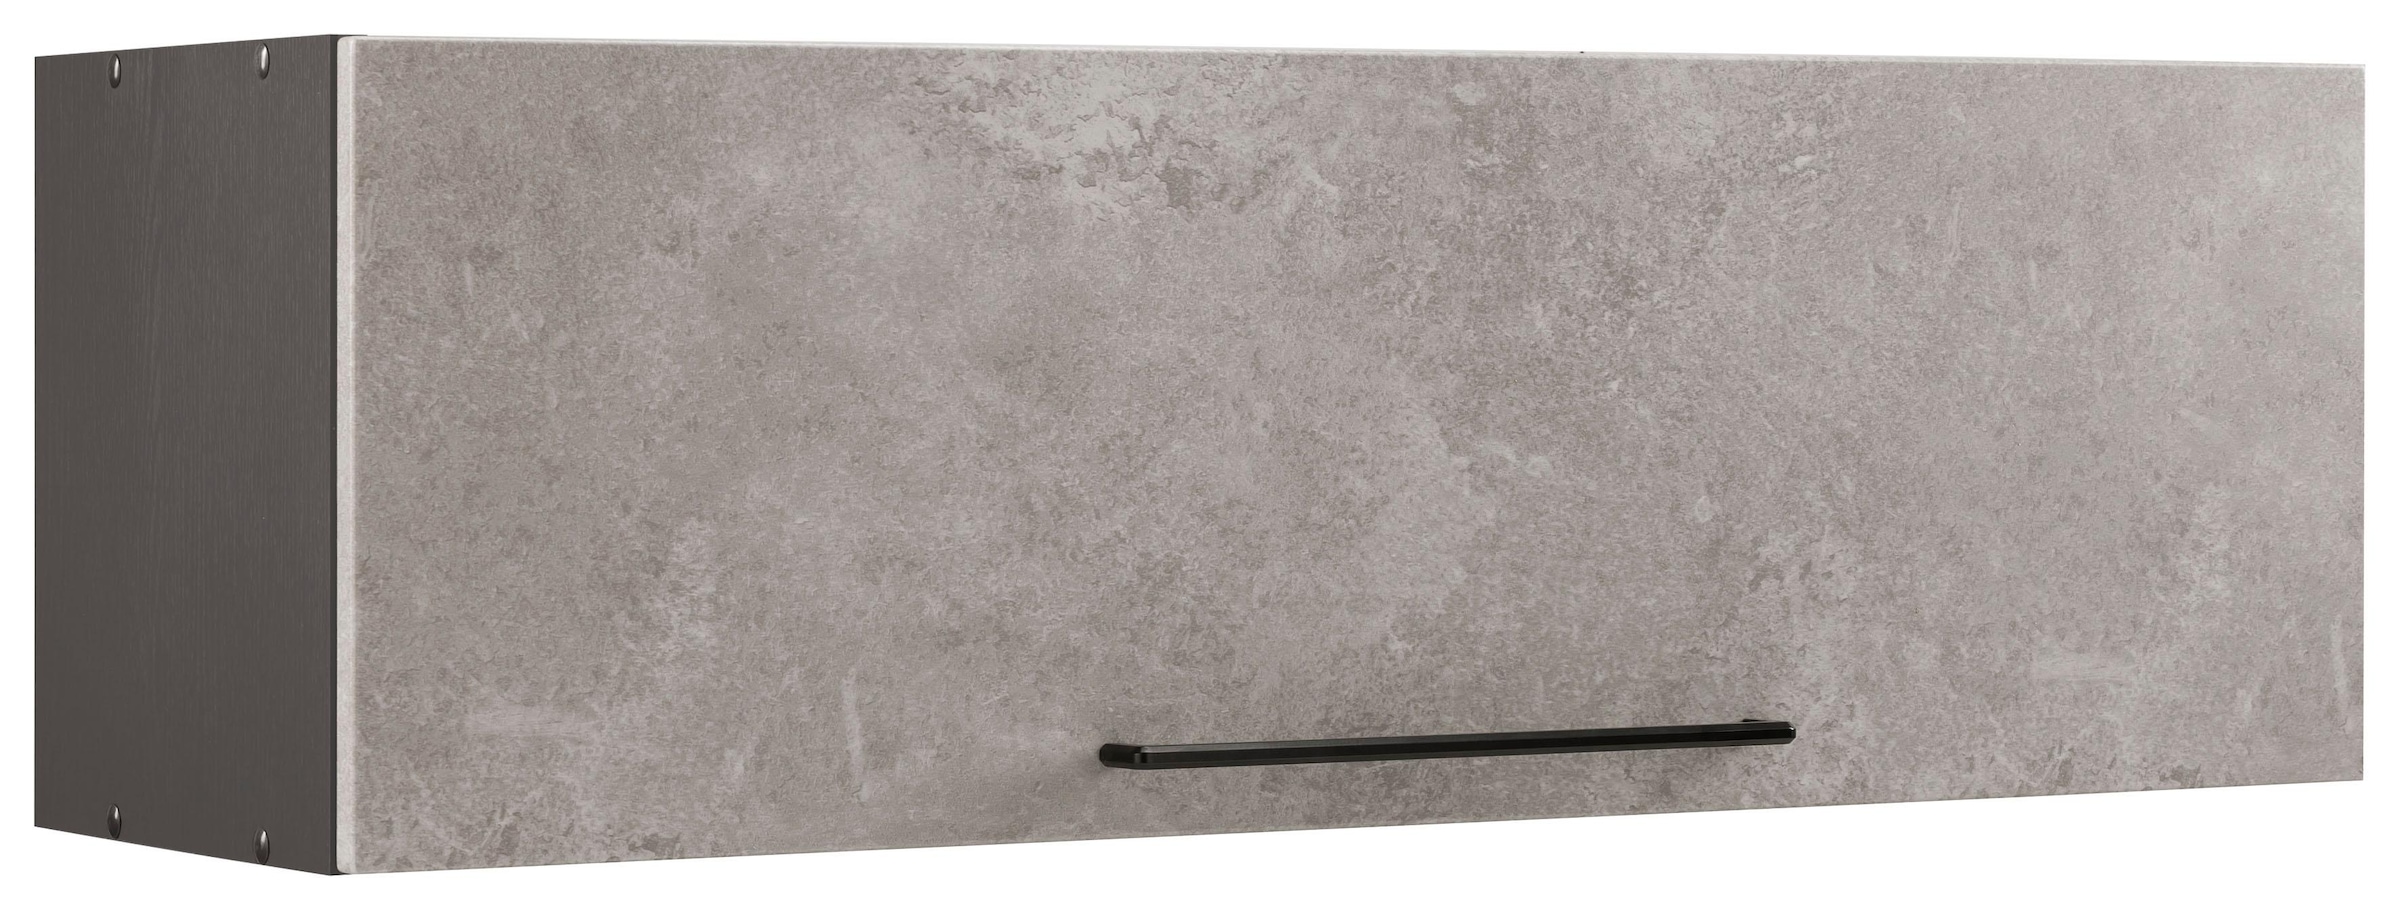 HELD MÖBEL Klapphängeschrank "Tulsa", 100 cm breit, mit 1 Klappe, schwarzer Metallgriff, MDF Front